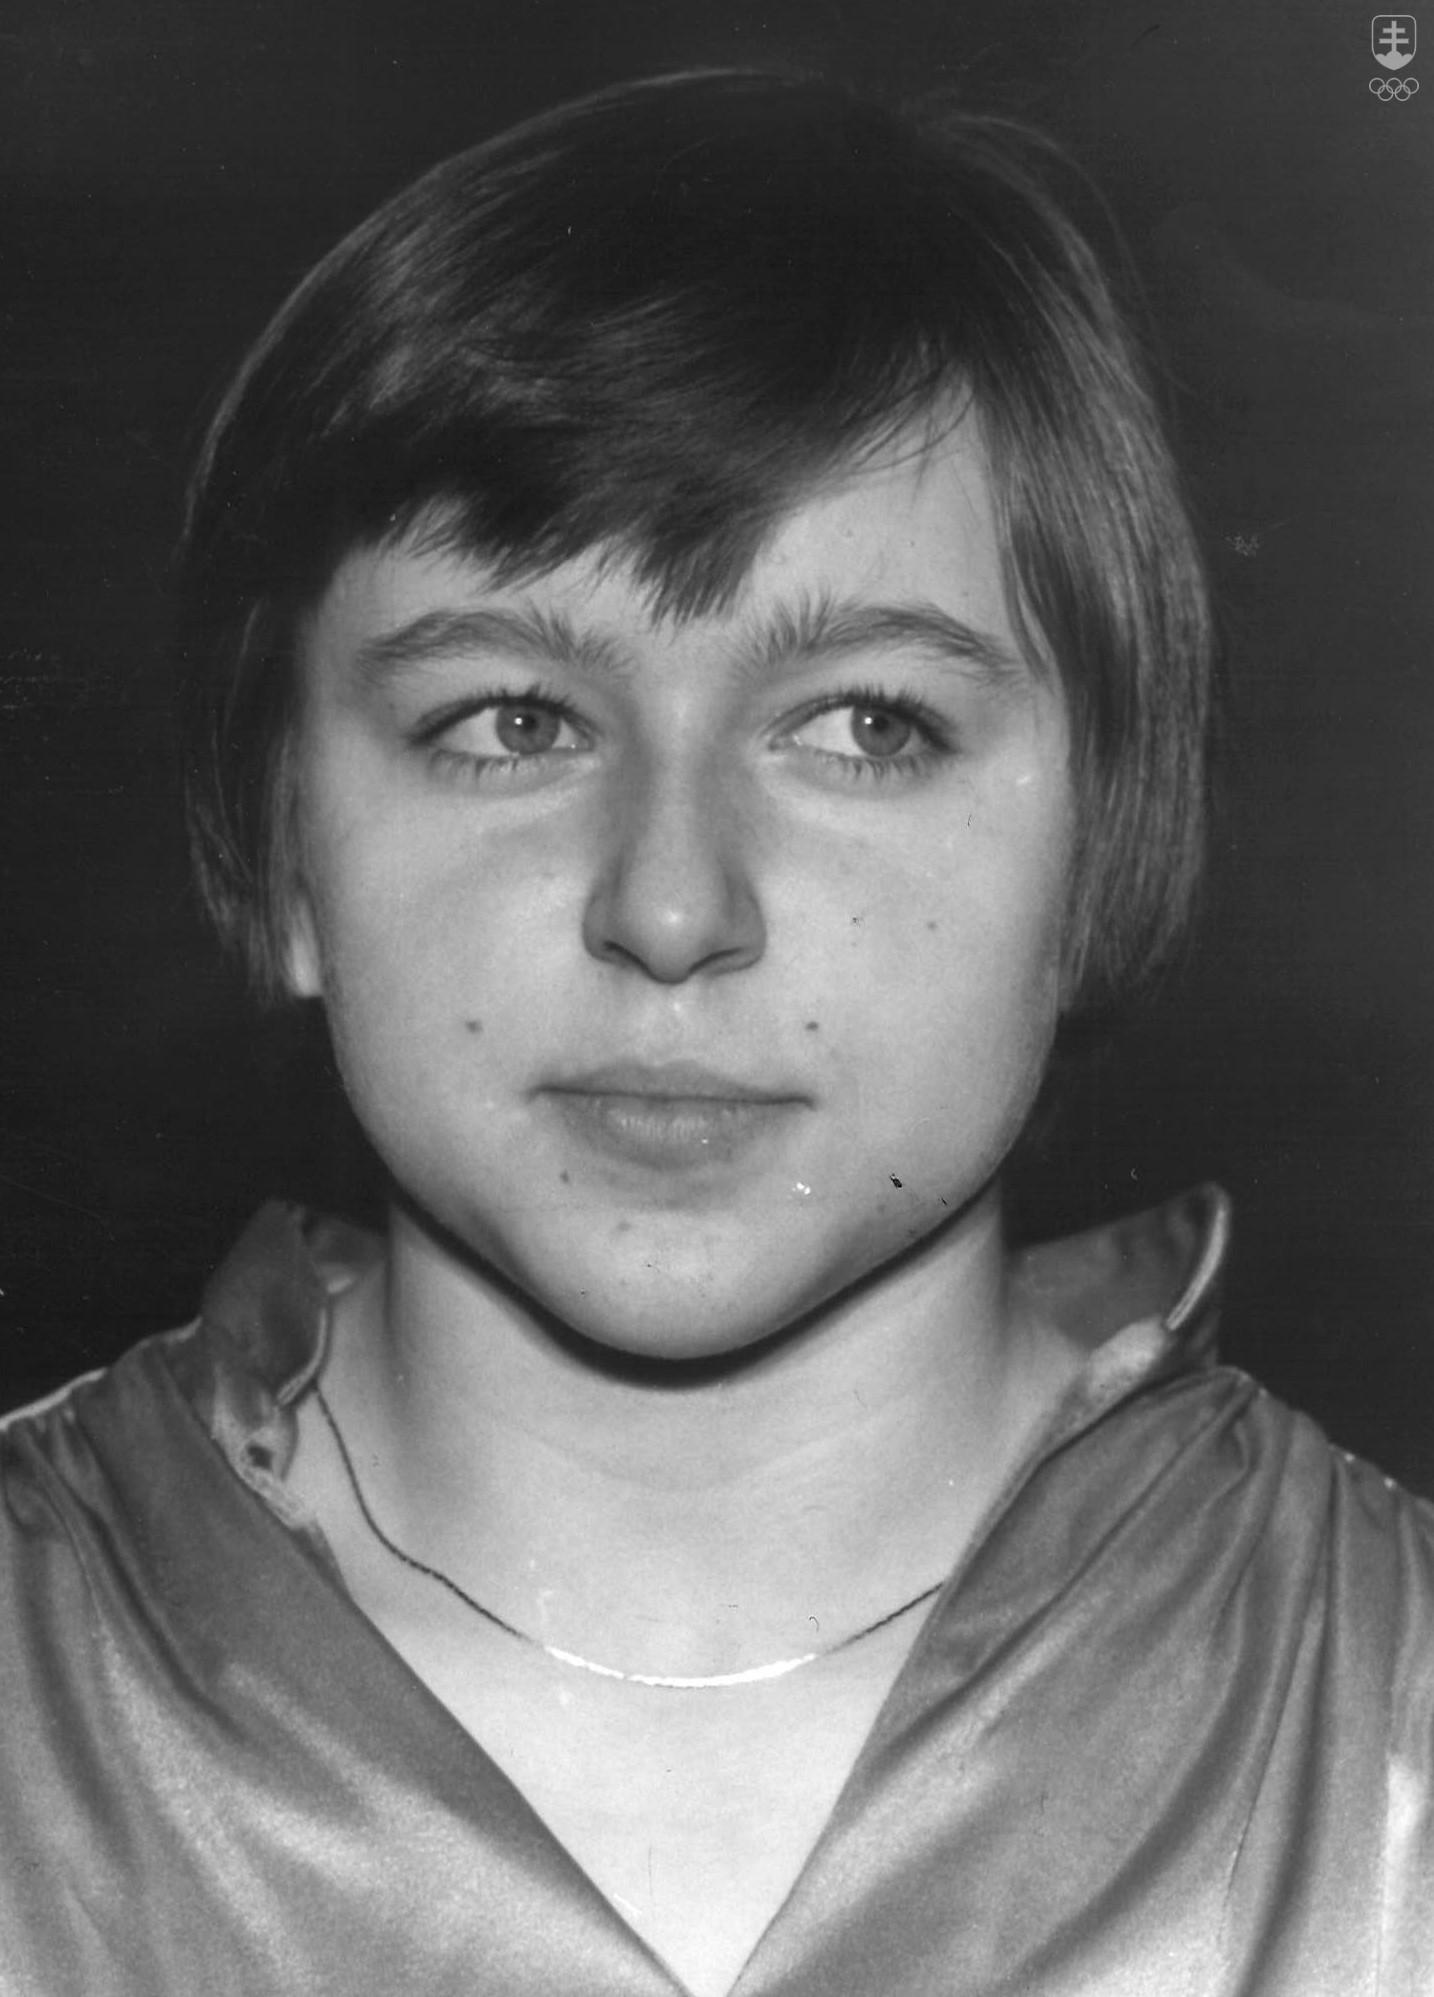 Portrét Evy Marečkovej z dávnych čias, keď sa na vrcholných súťažiach bila o medaily.